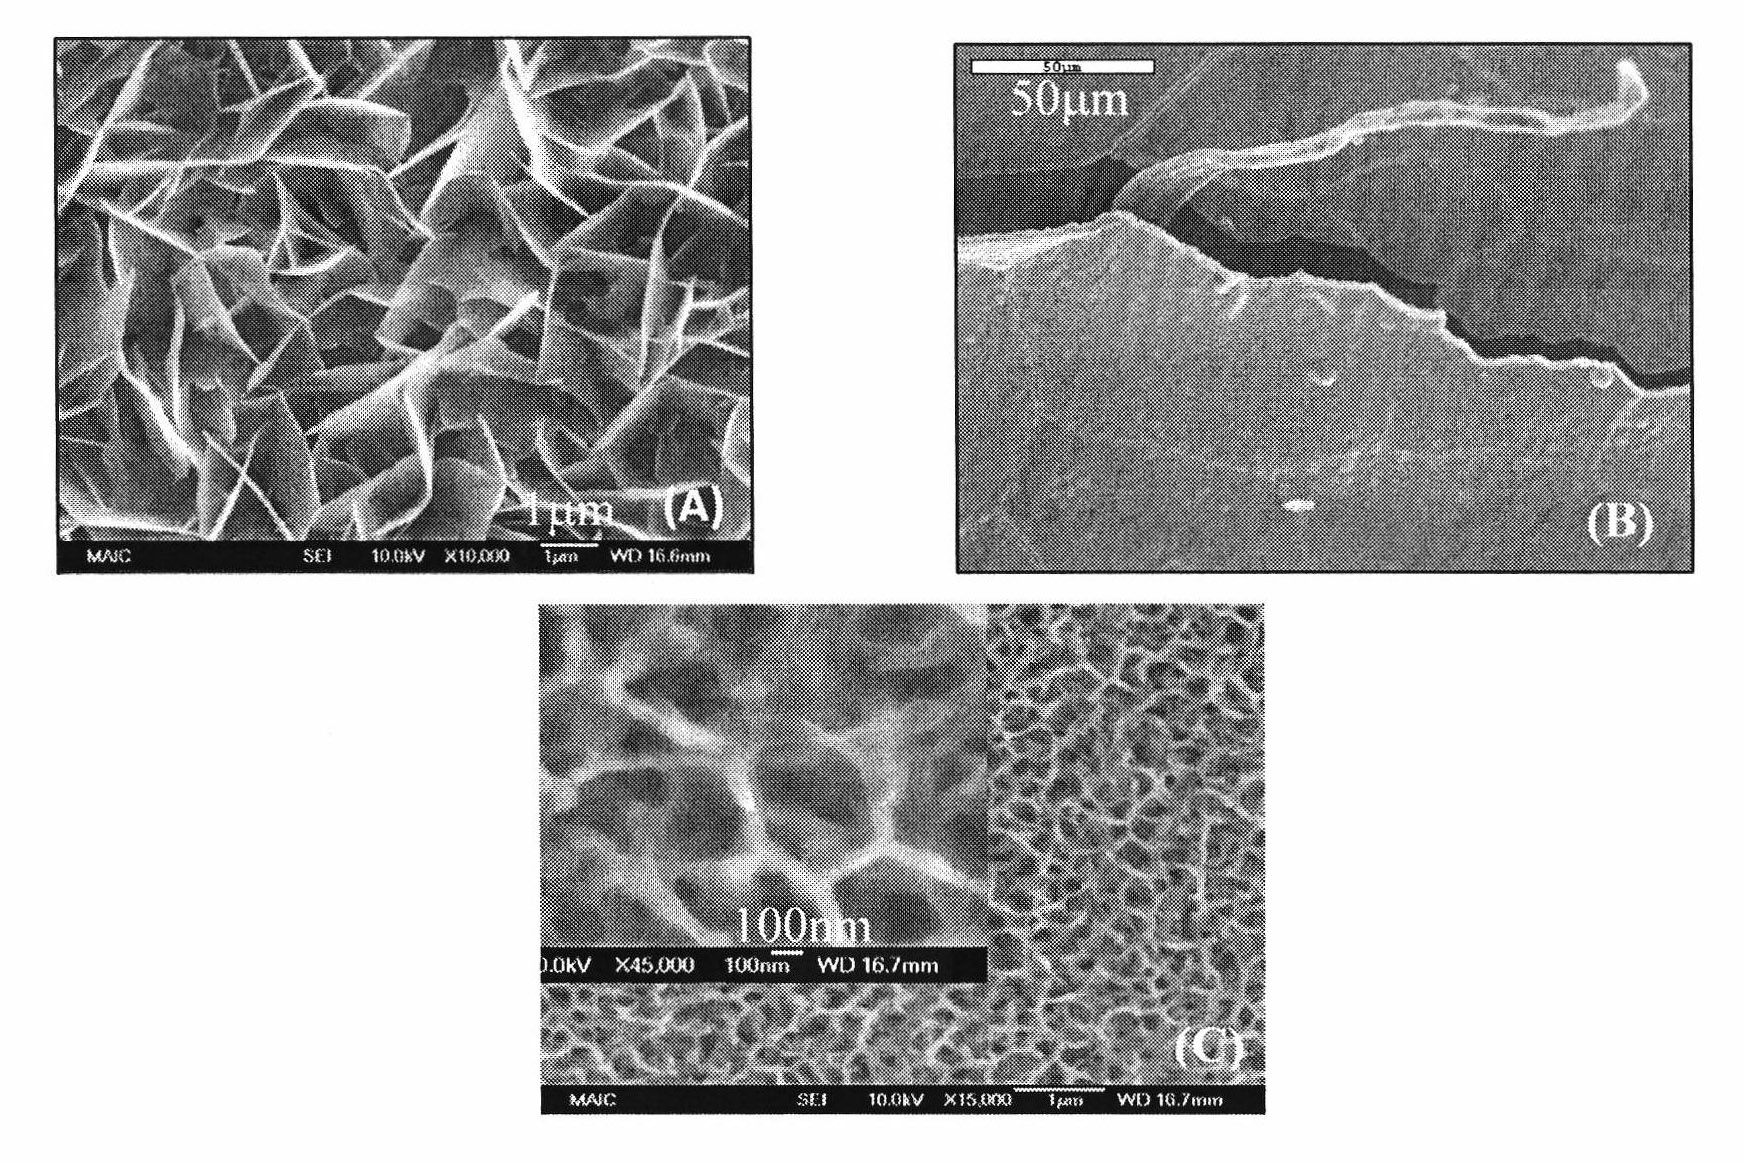 Nanometer pore hydroxyl calcium phosphate/aquogel materials